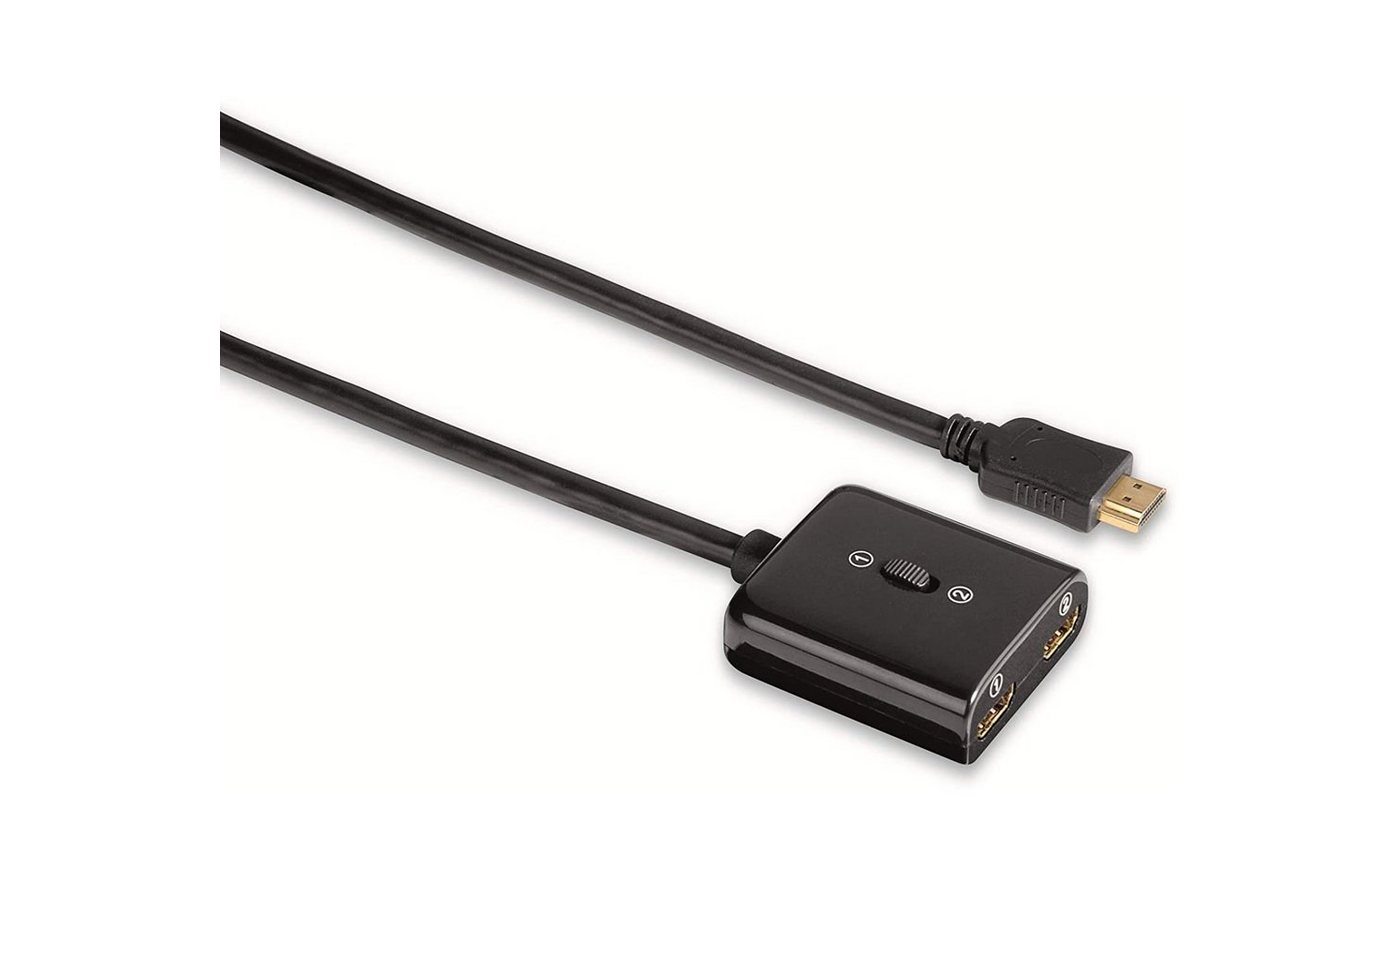 Thomson HDMI-Umschalter Verteiler Splitter 1 > 2 Video-Adapter HDMI zu HDMI, Manuell, Full-HD 1080p, Kabel Adapter, für TV PC Konsole DVB-T2 etc. von Thomson